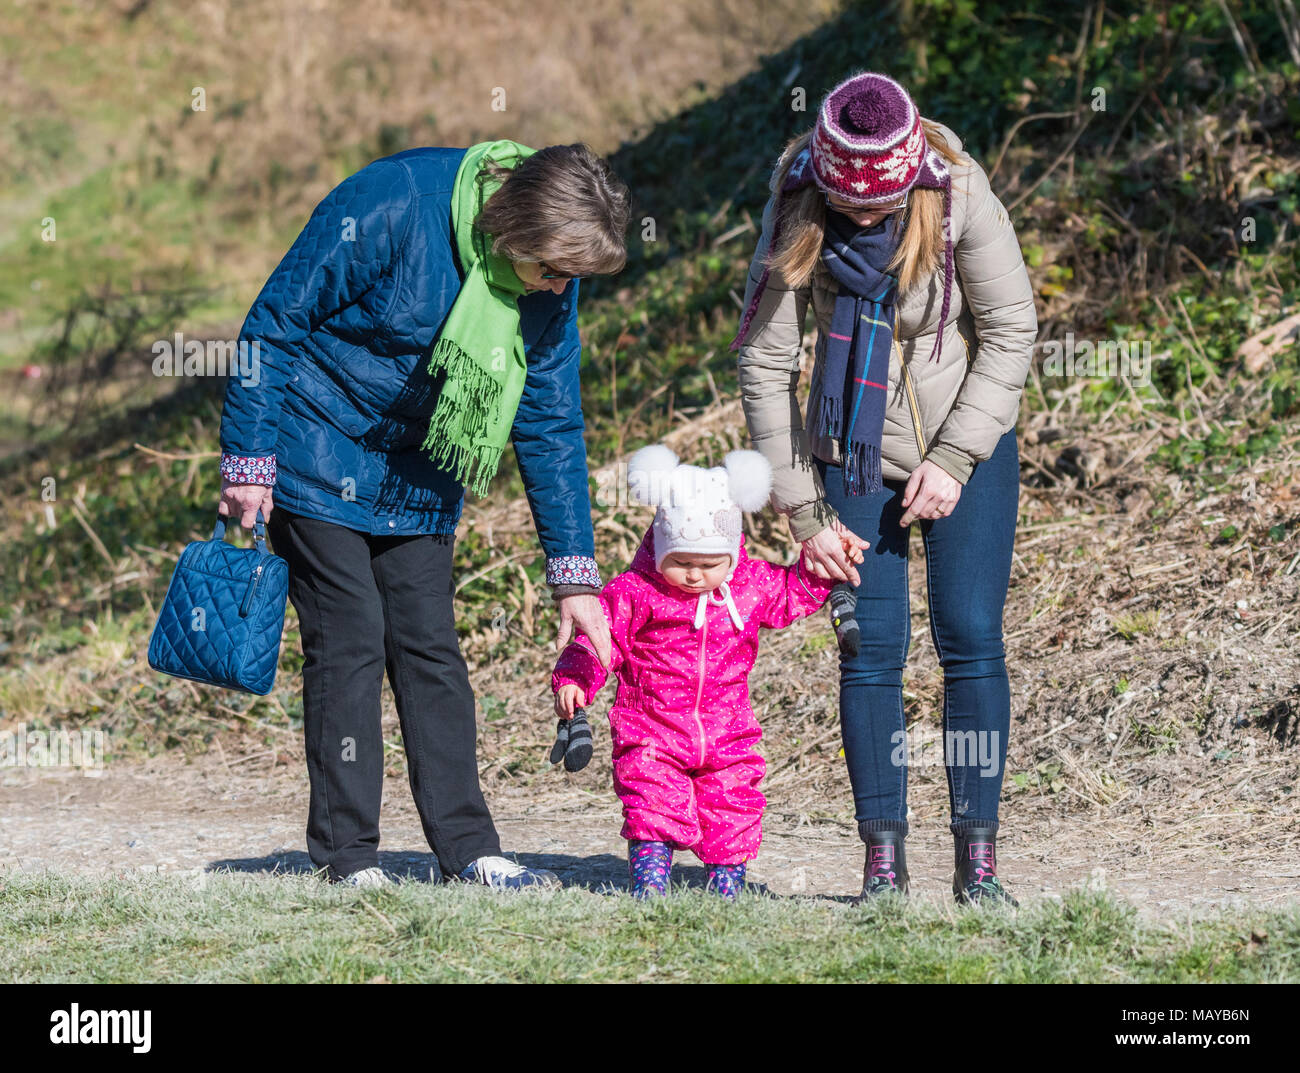 Tenant la main de bébé avec 2 femmes lors de la marche. Peut-être les premiers pas ou l'apprentissage de la marche. Banque D'Images